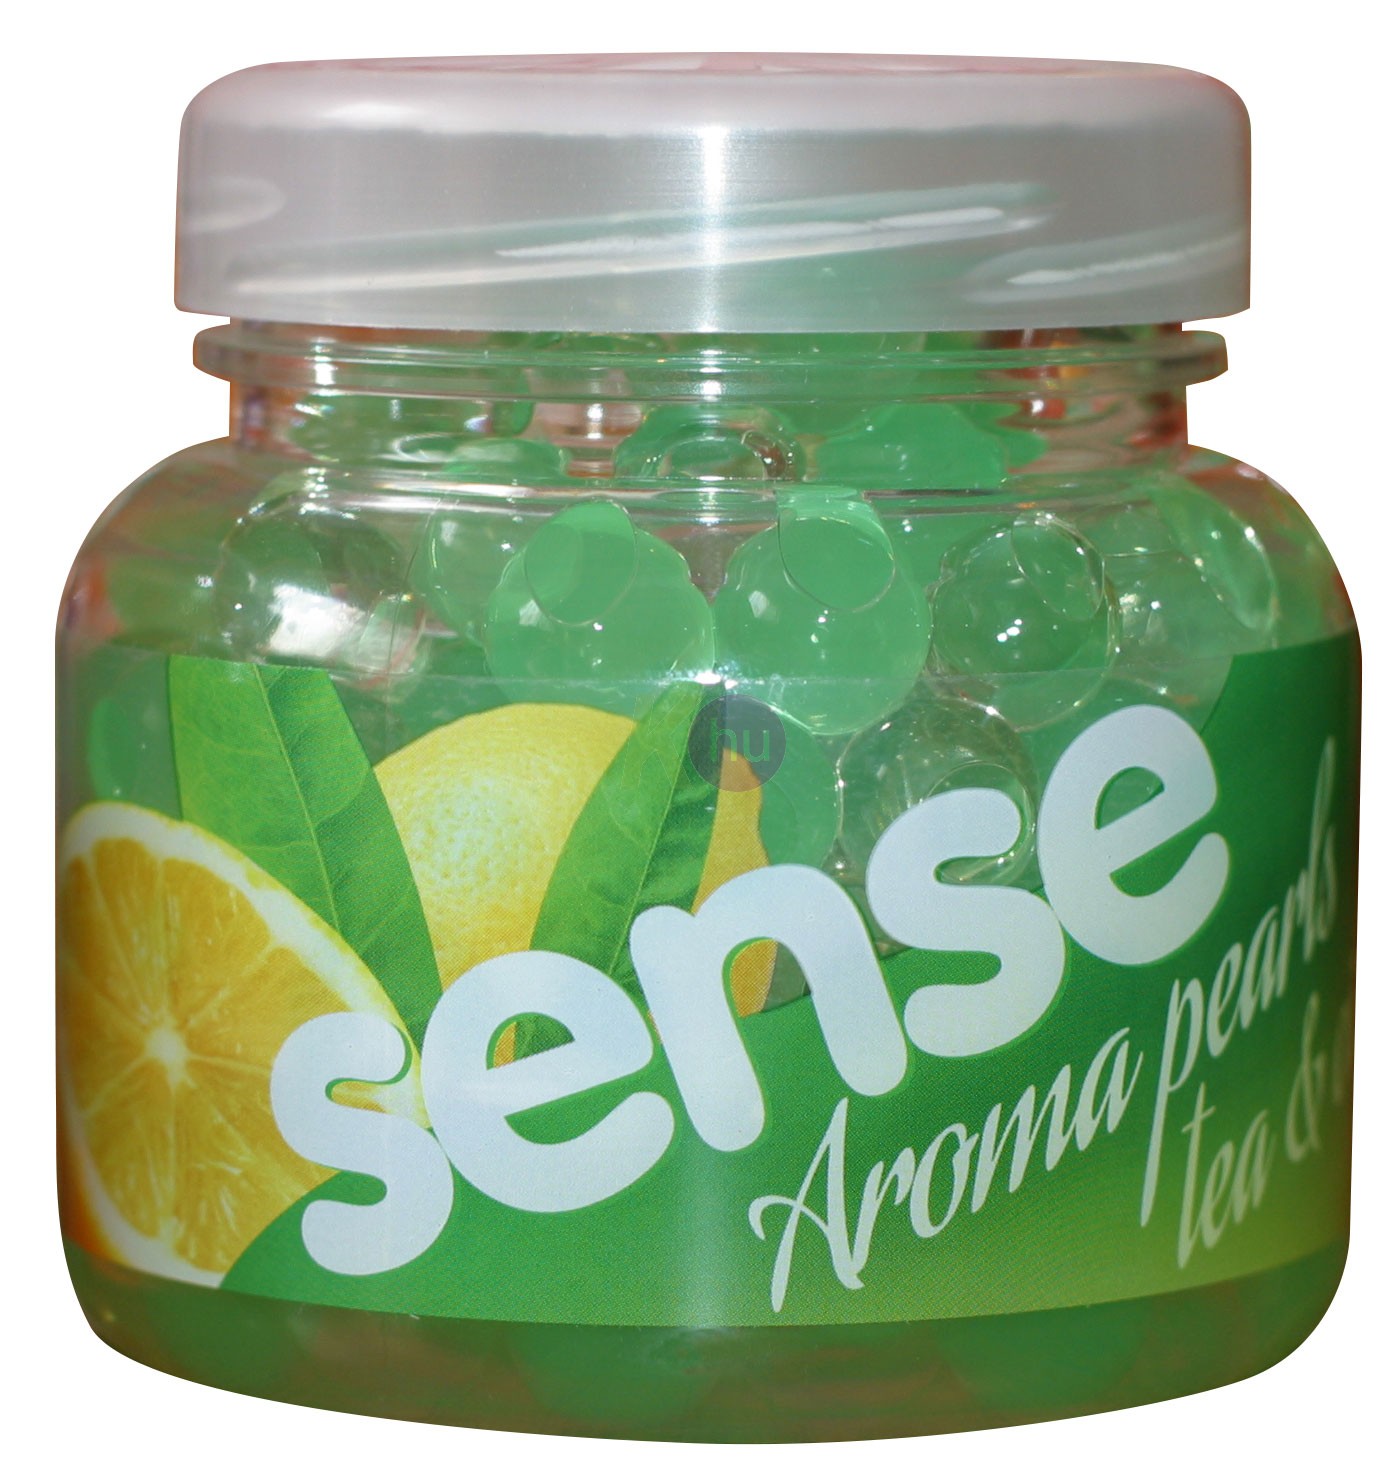 Sense illatgyöngy 200g Tea&Citrus 10020129